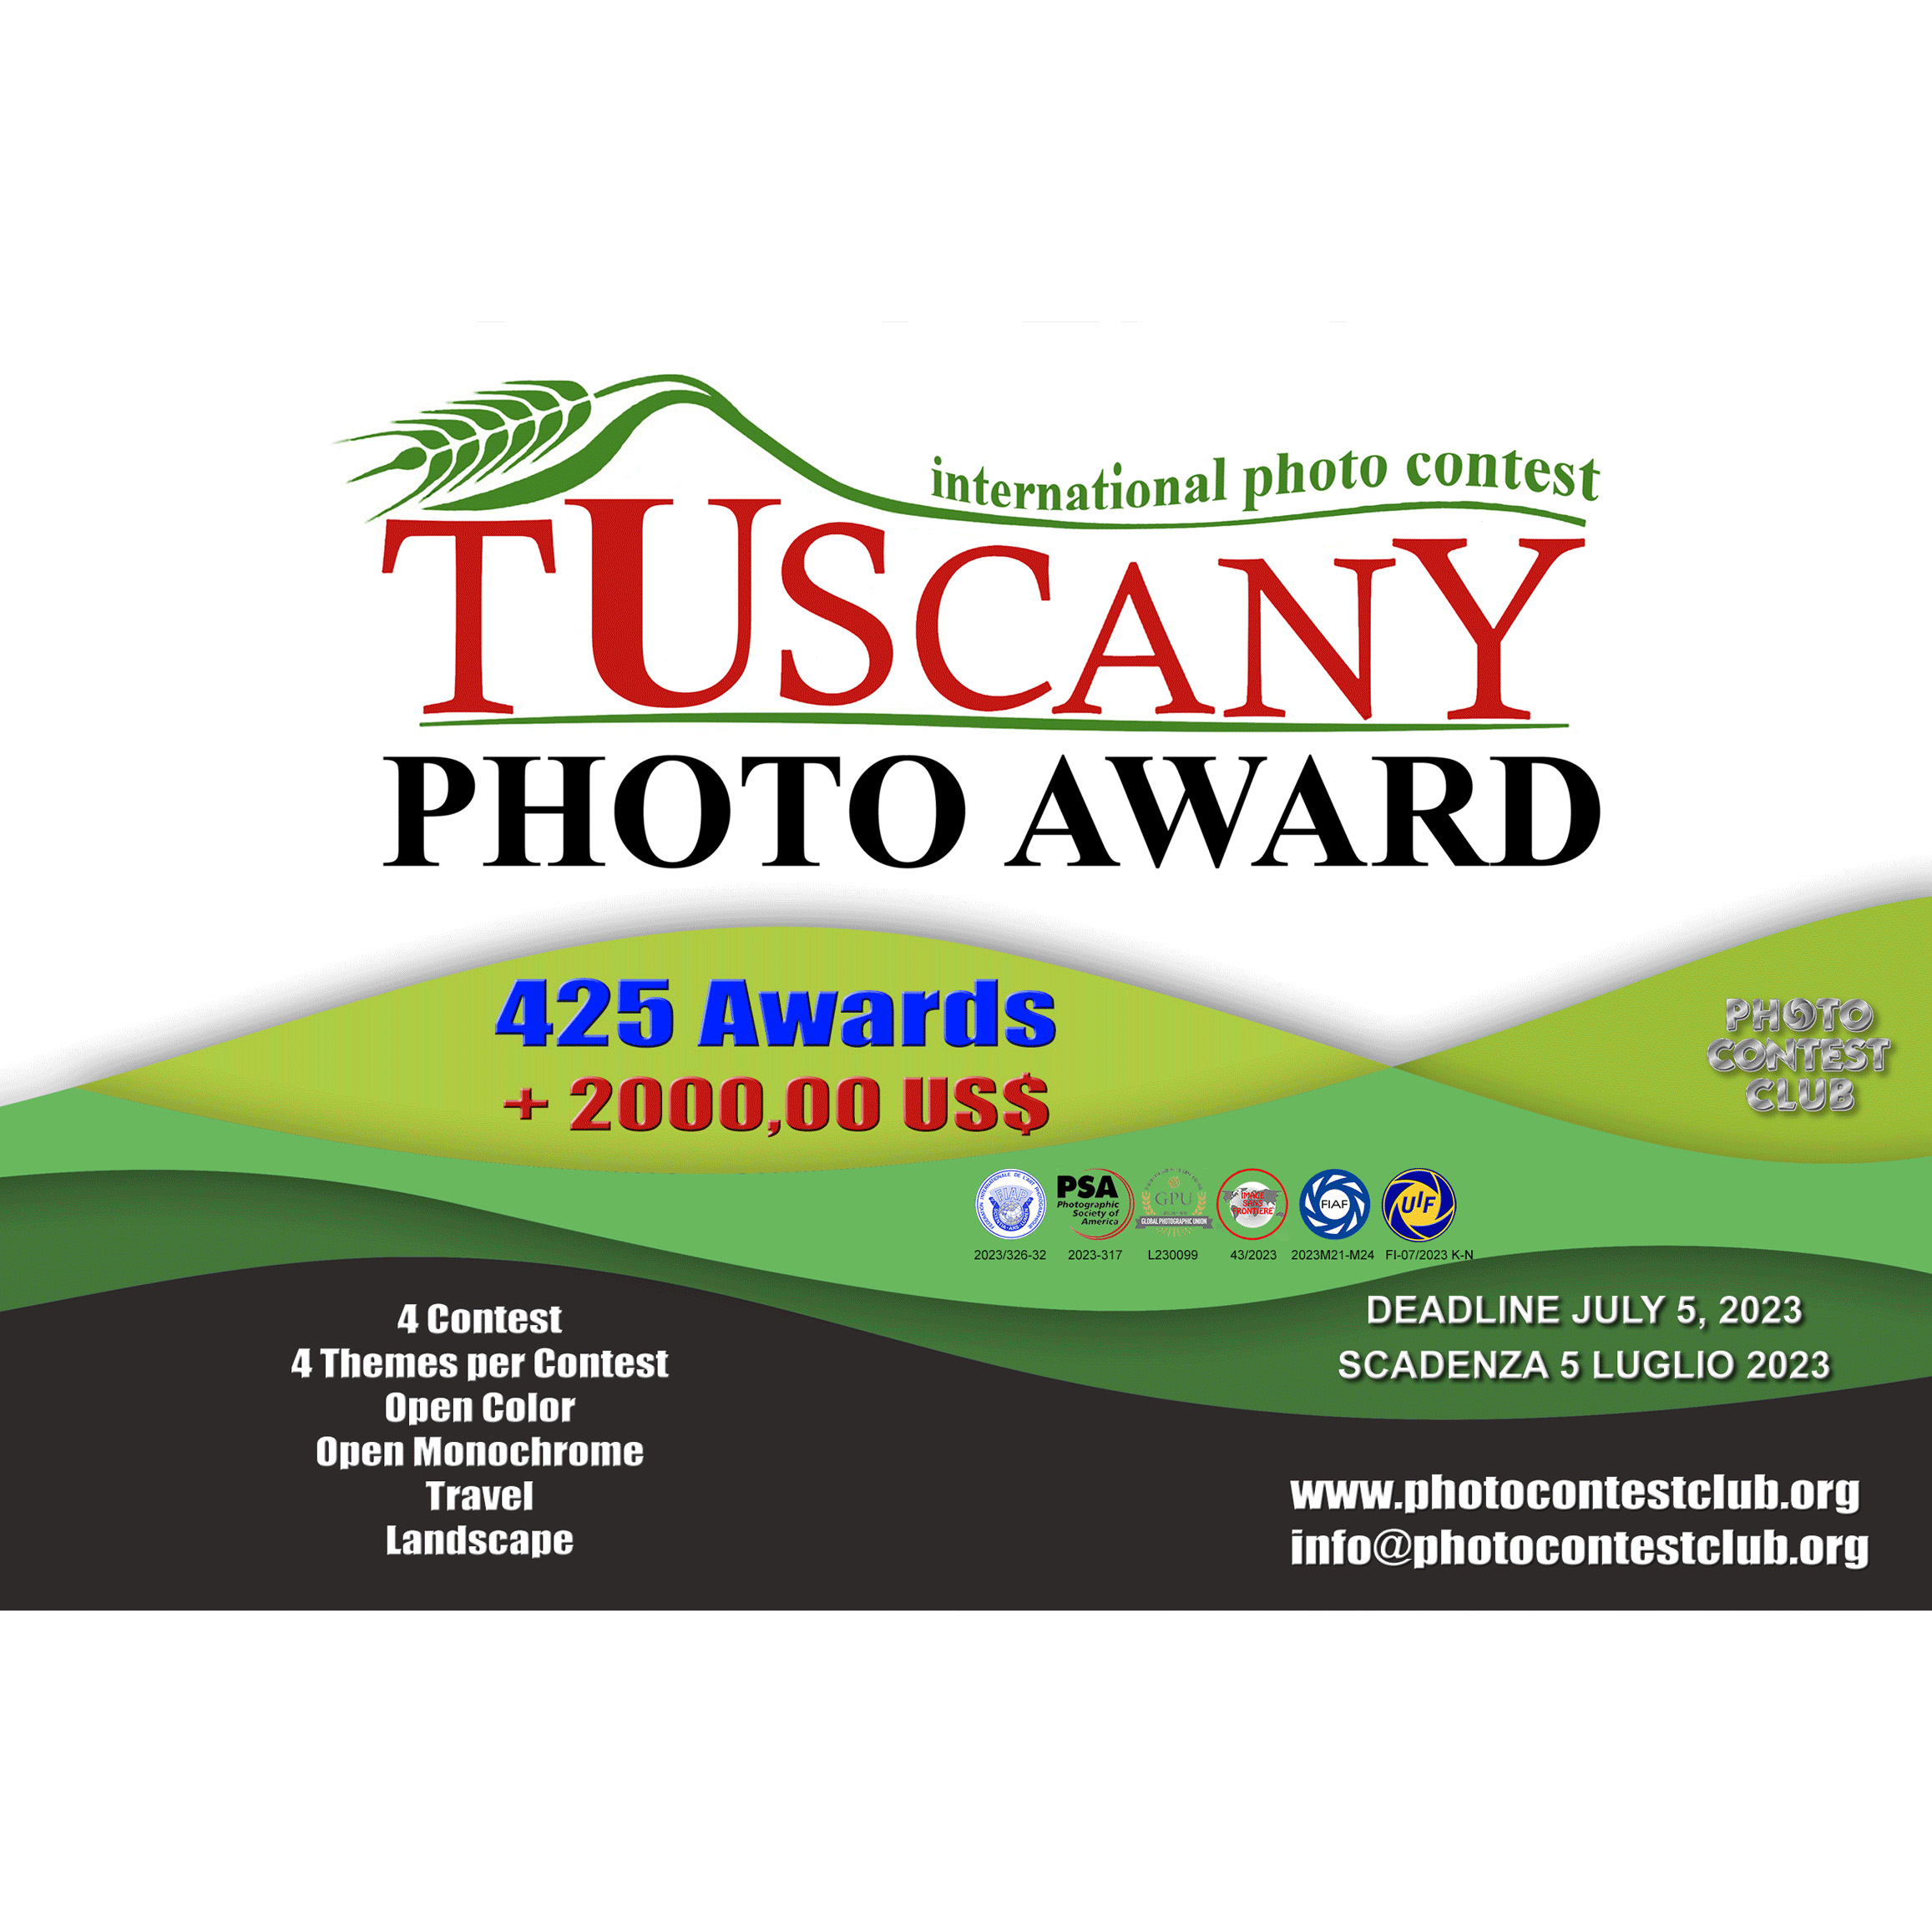 Tuscany Photo Award 2023